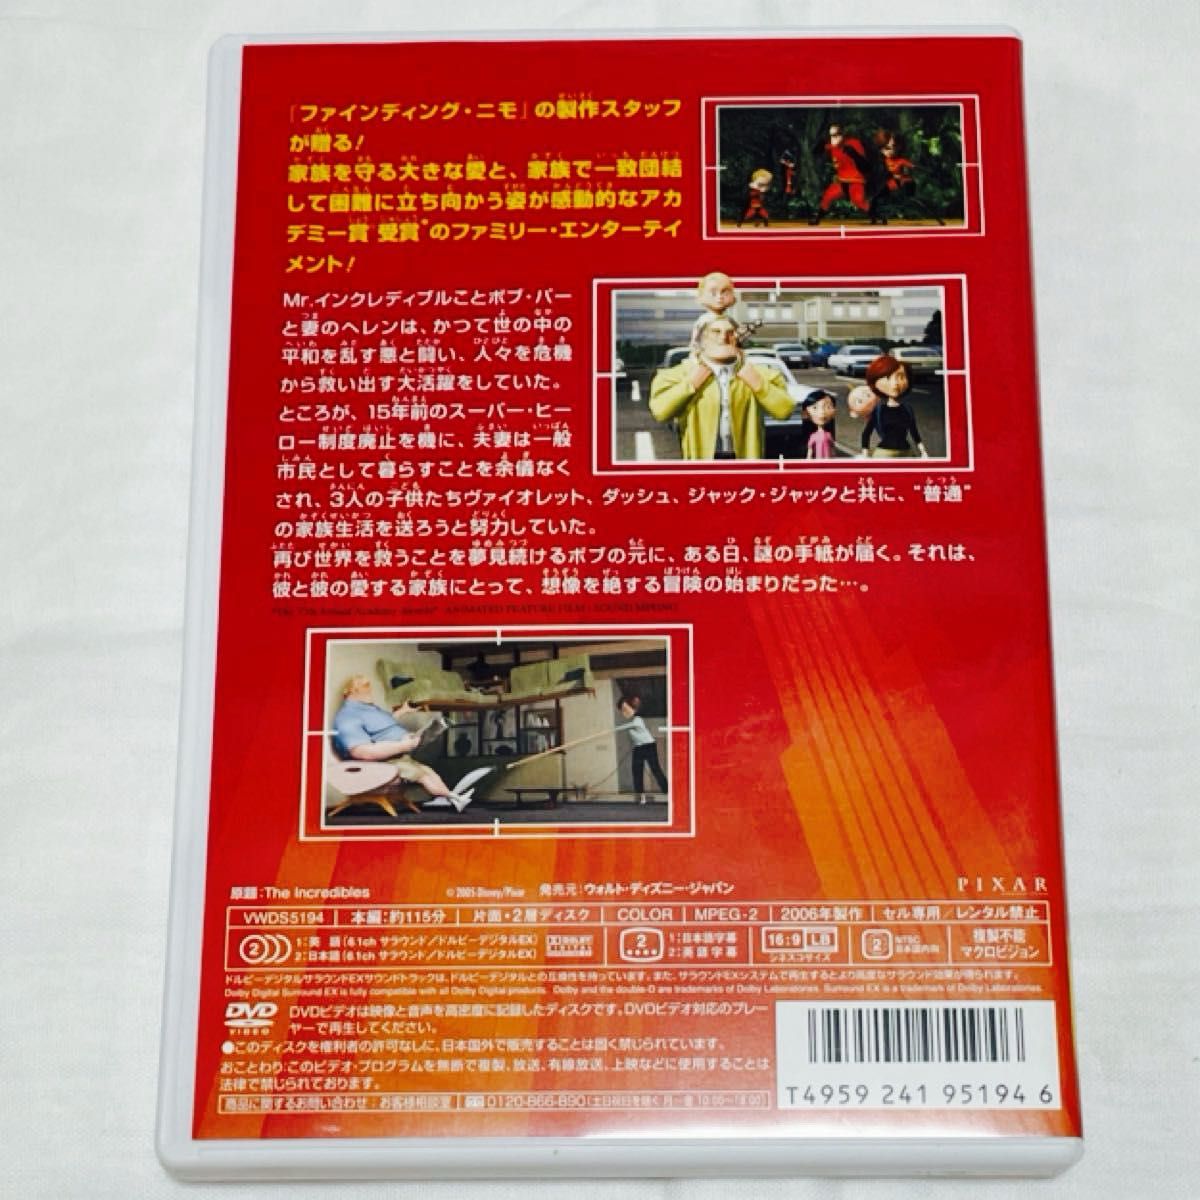 Mr.インクレディブル DVD  ディズニー ピクサー セル版